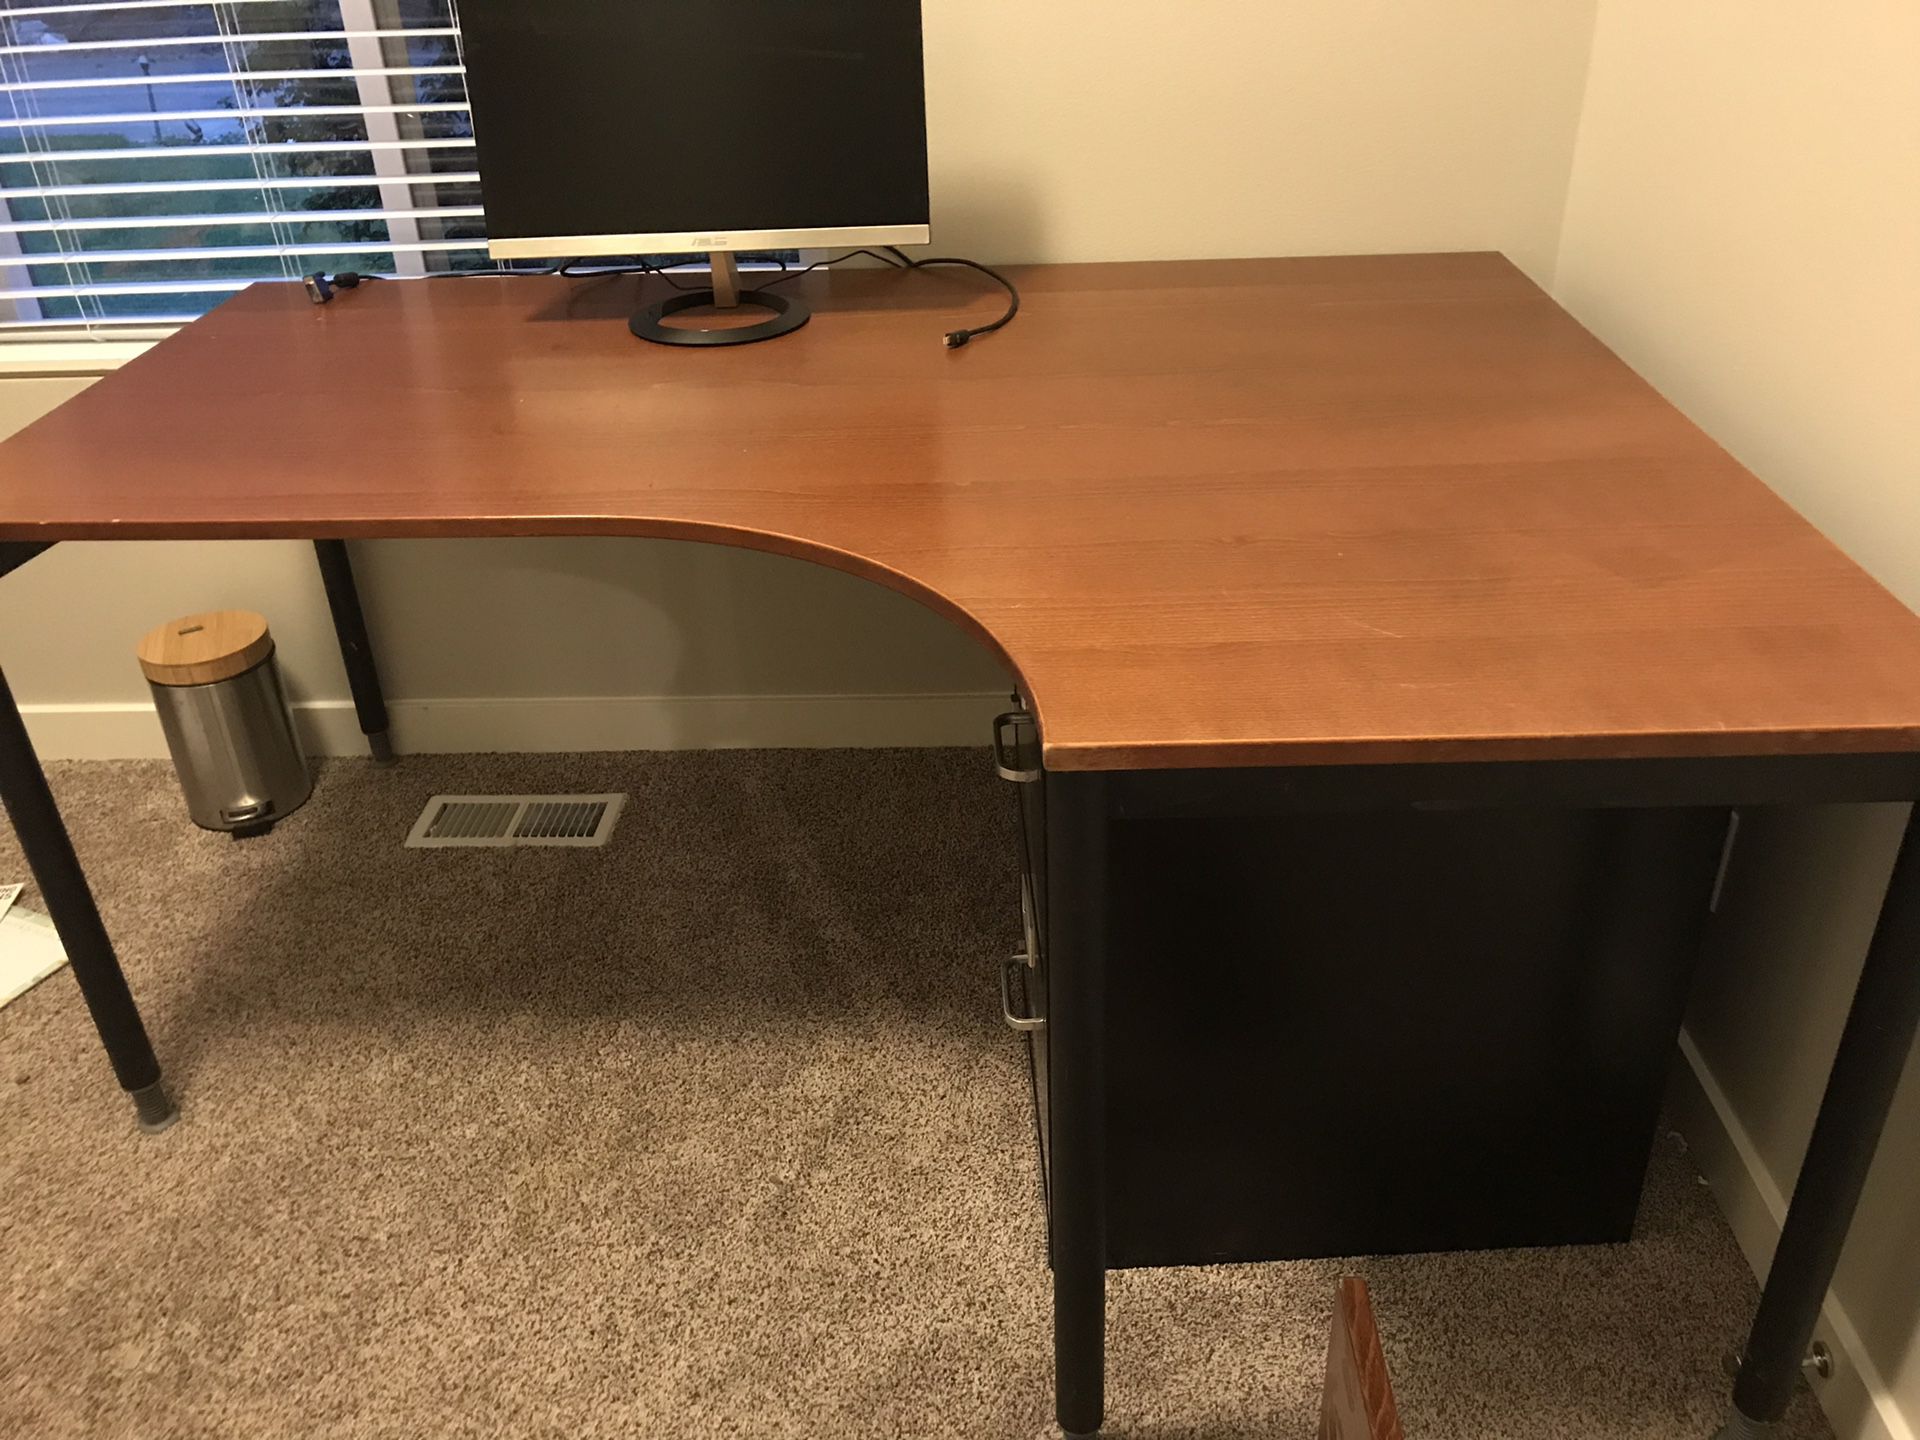 IKEA desk with movable shelf